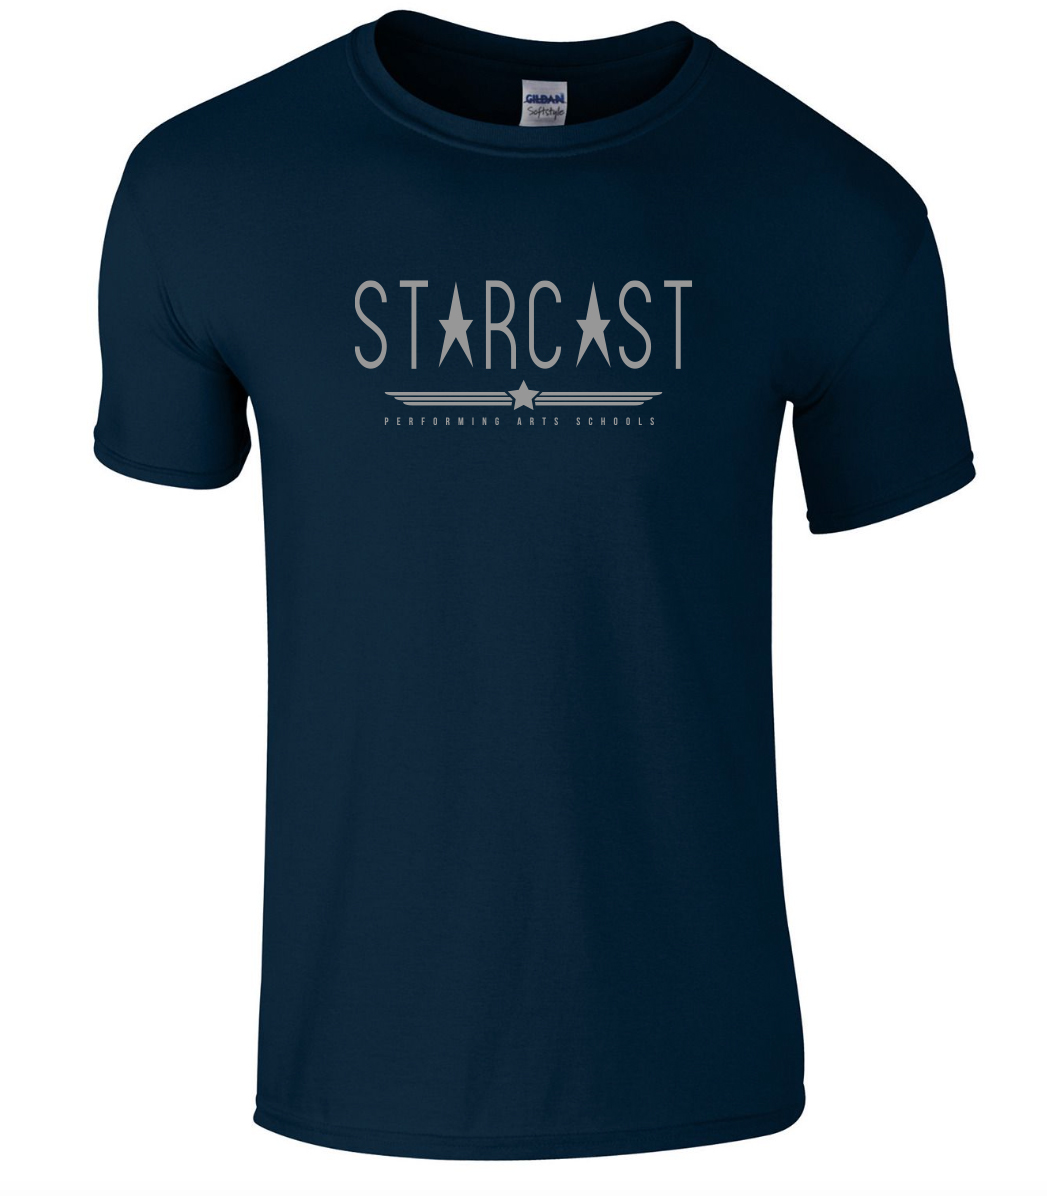 StarcastT-Shirt